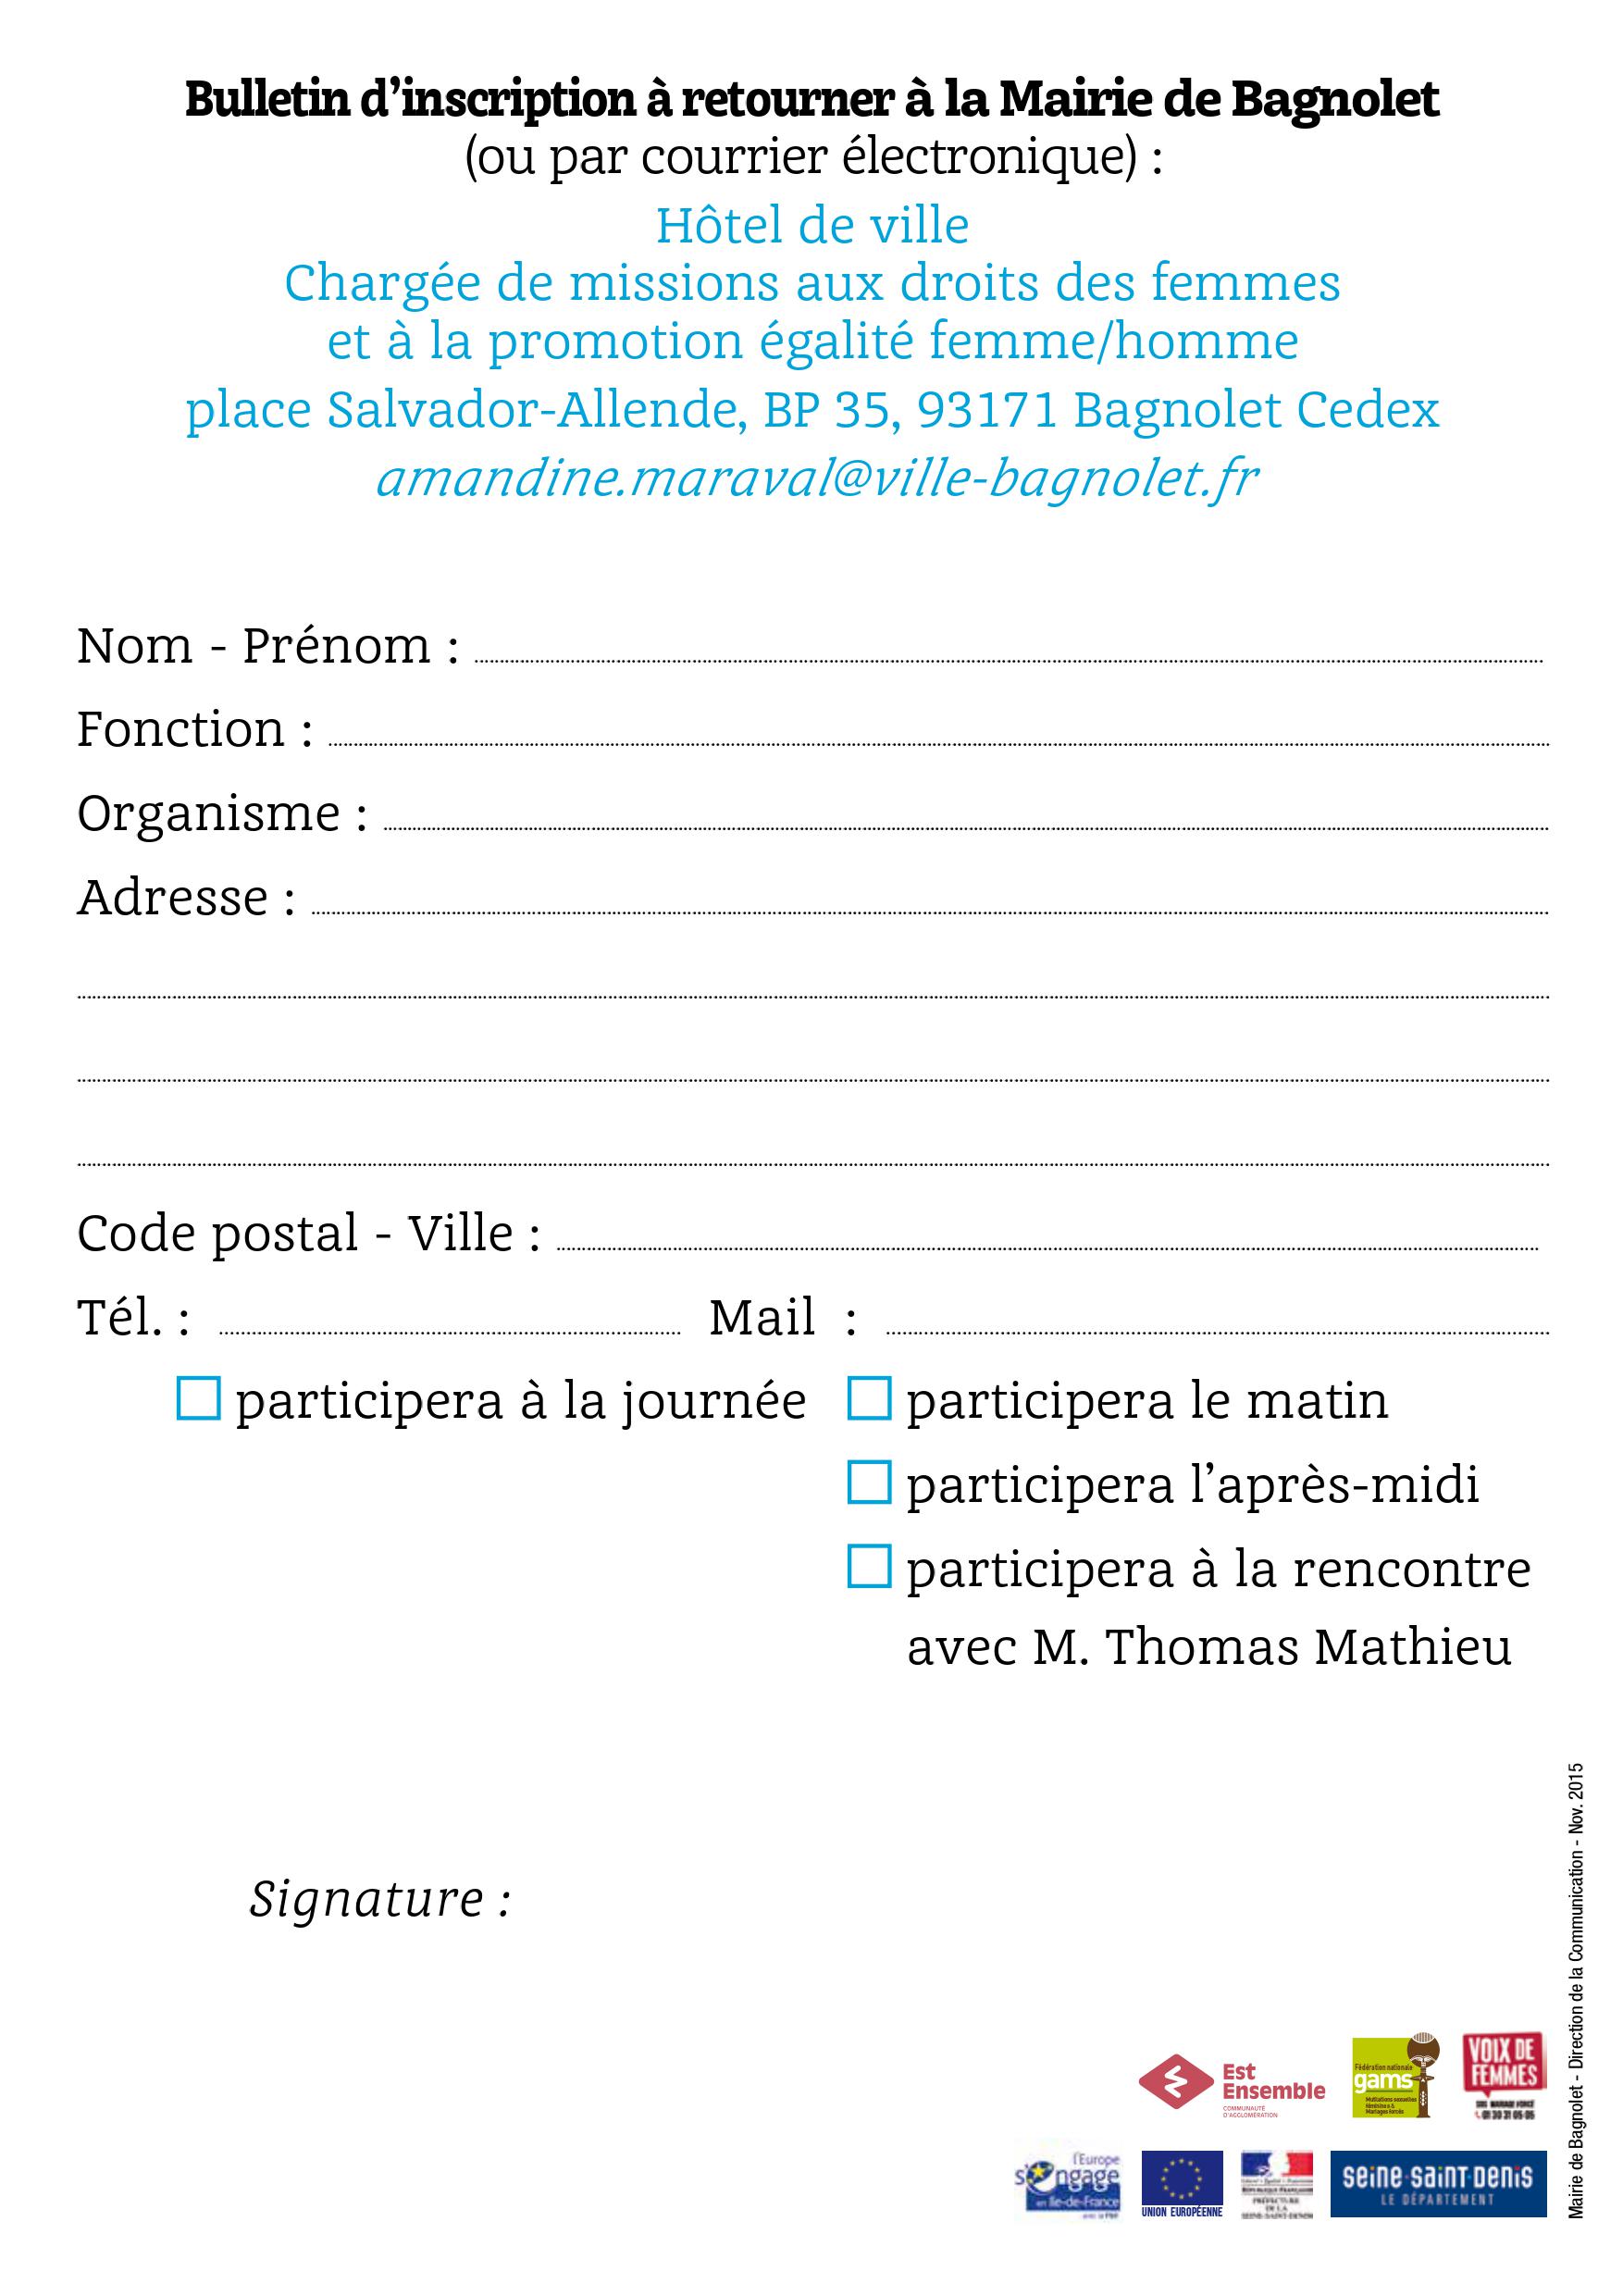 Bulletin d'inscription Bagnolet 20 novembre 2015 Verso